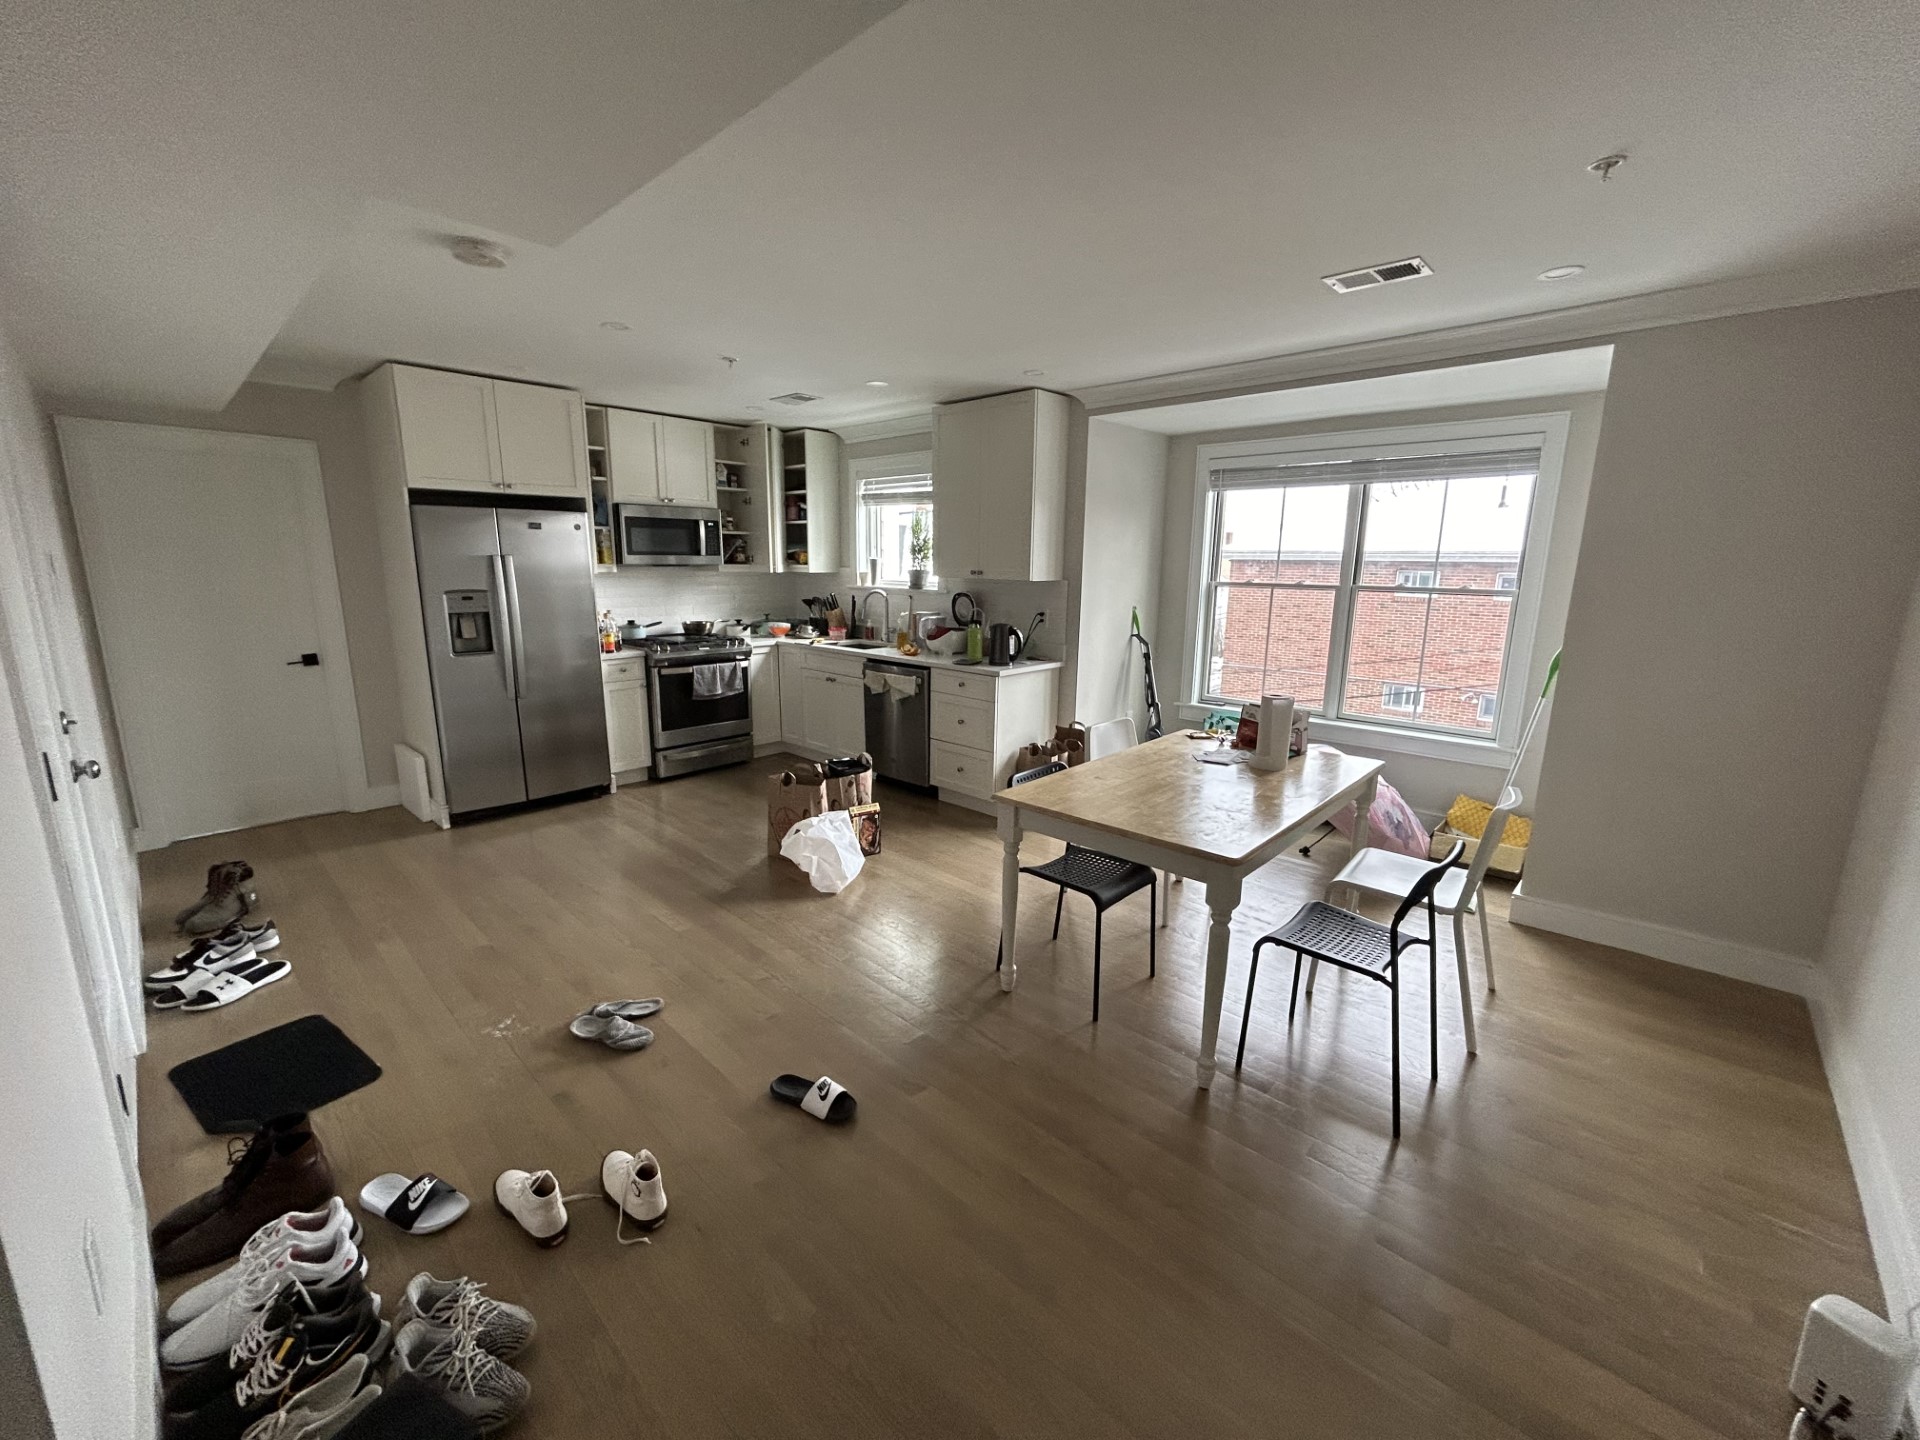 Photos of apartment on Greylock Rd.,Boston MA 02134